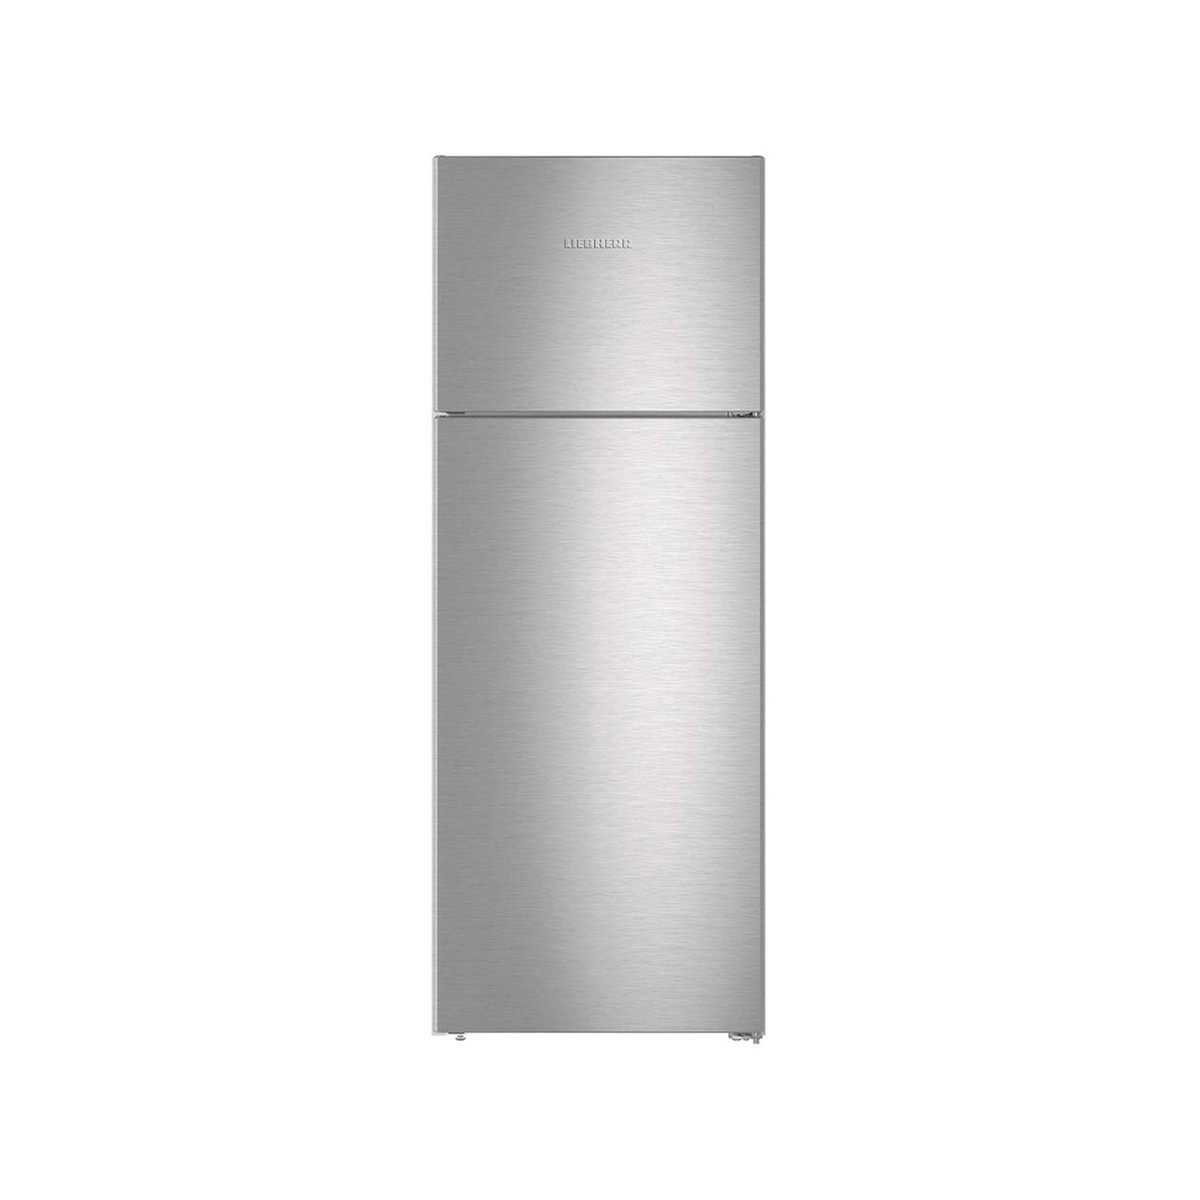 Liebherr Double Door Refrigerator CTNEF5215 418Ltr